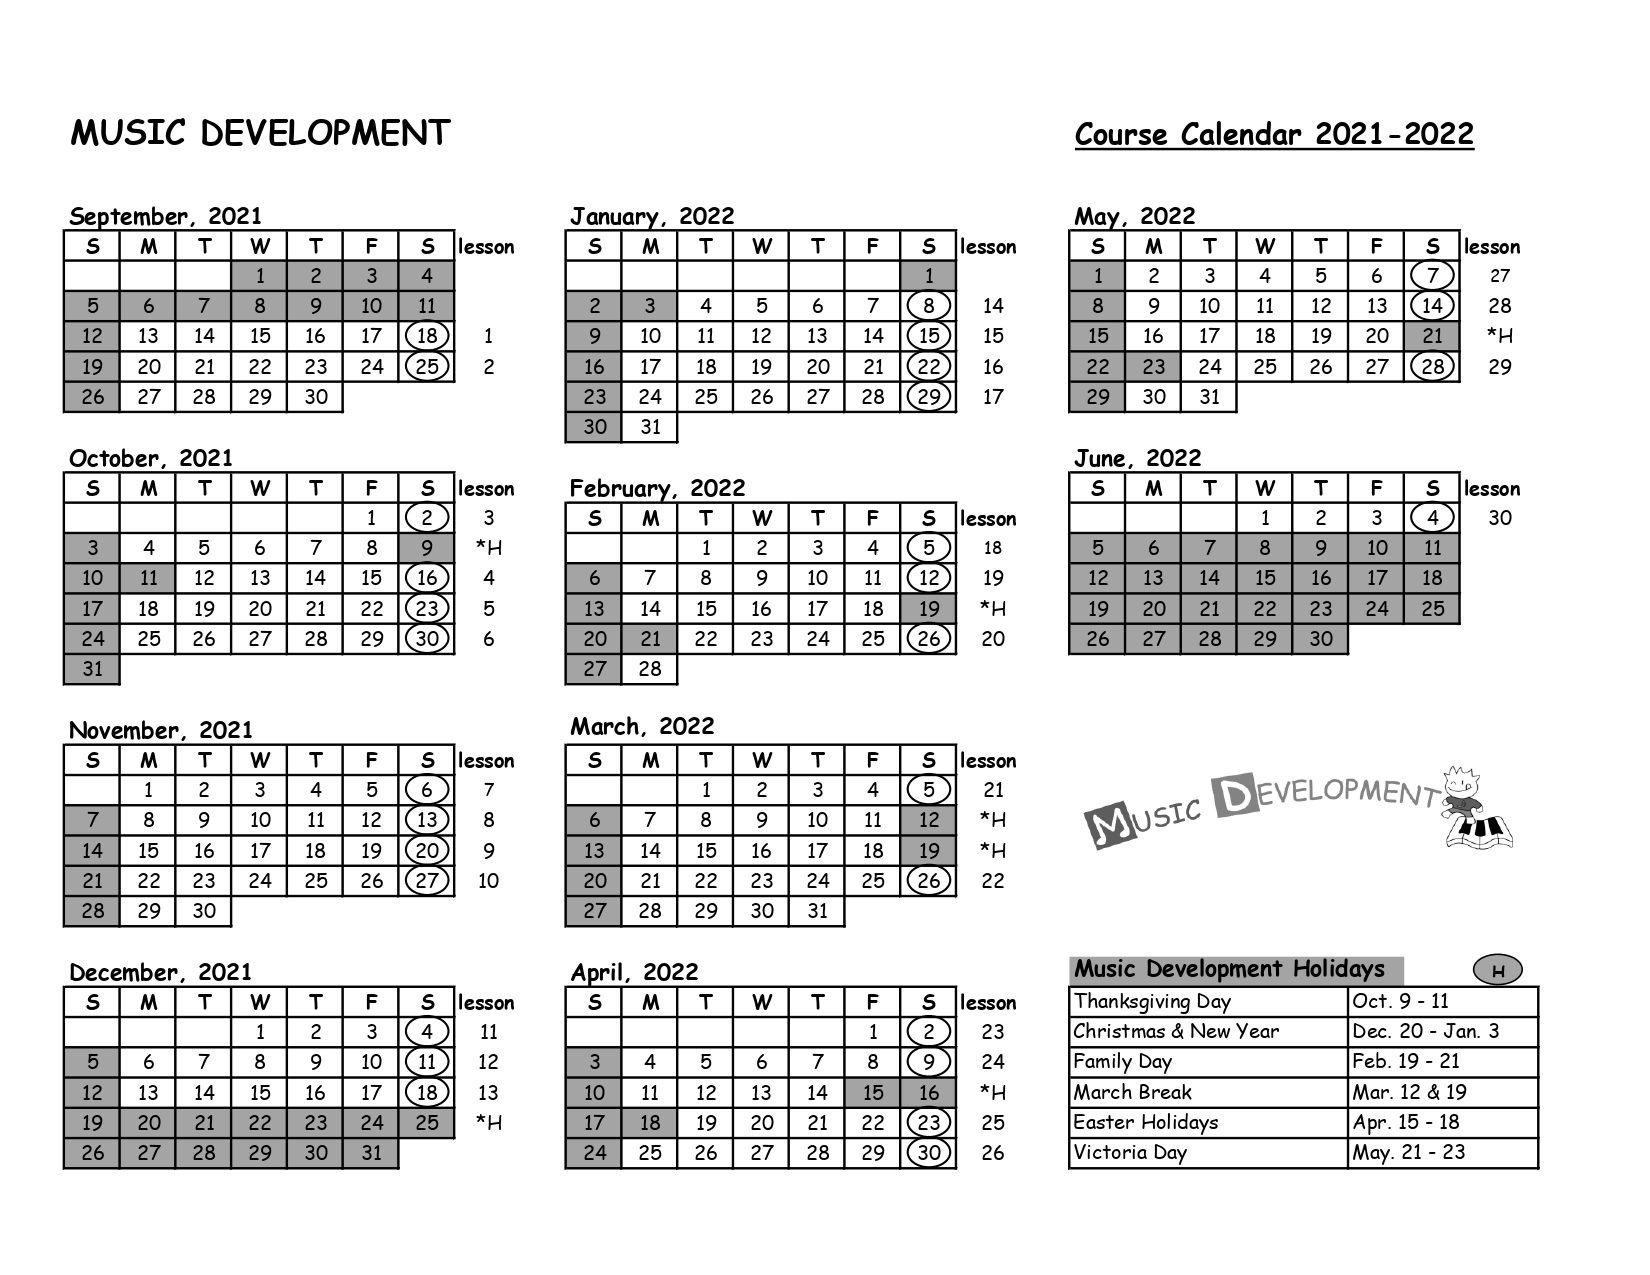 Music Development Calendar 21-22